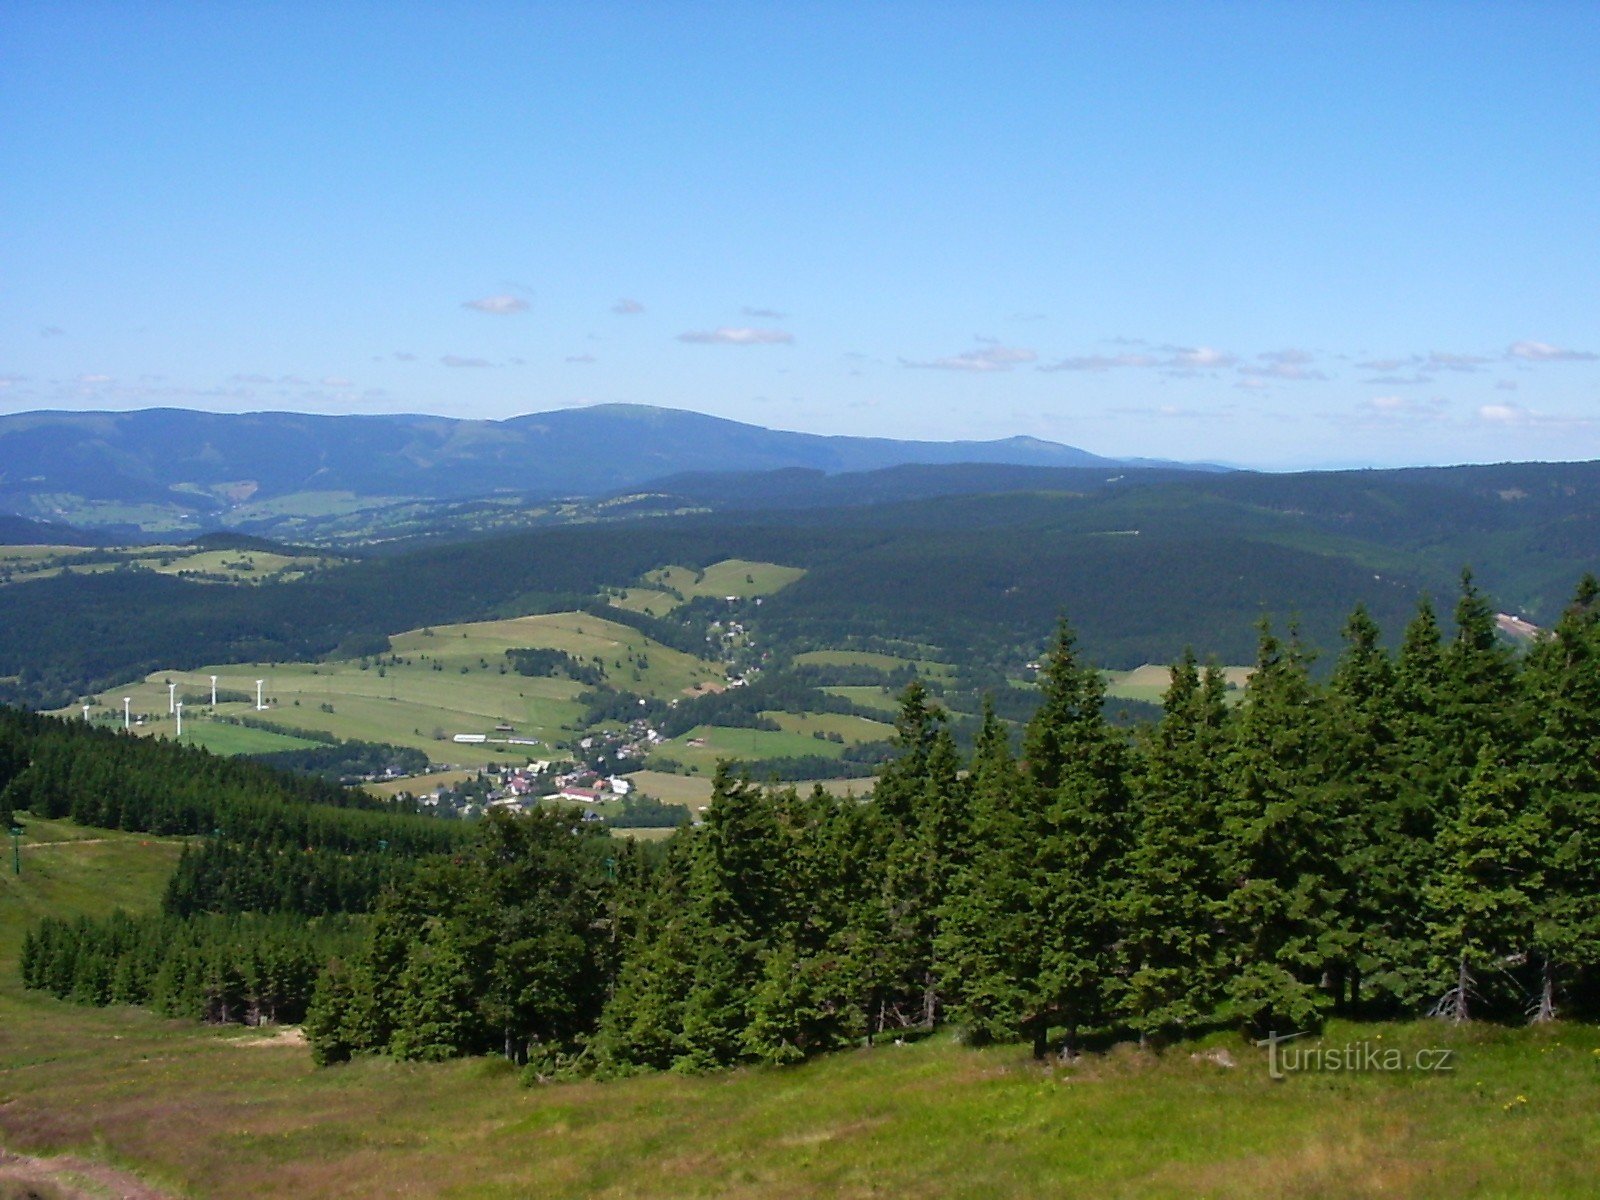 La vista a lo largo de la carretera desde aproximadamente la mitad del camino a Šerák